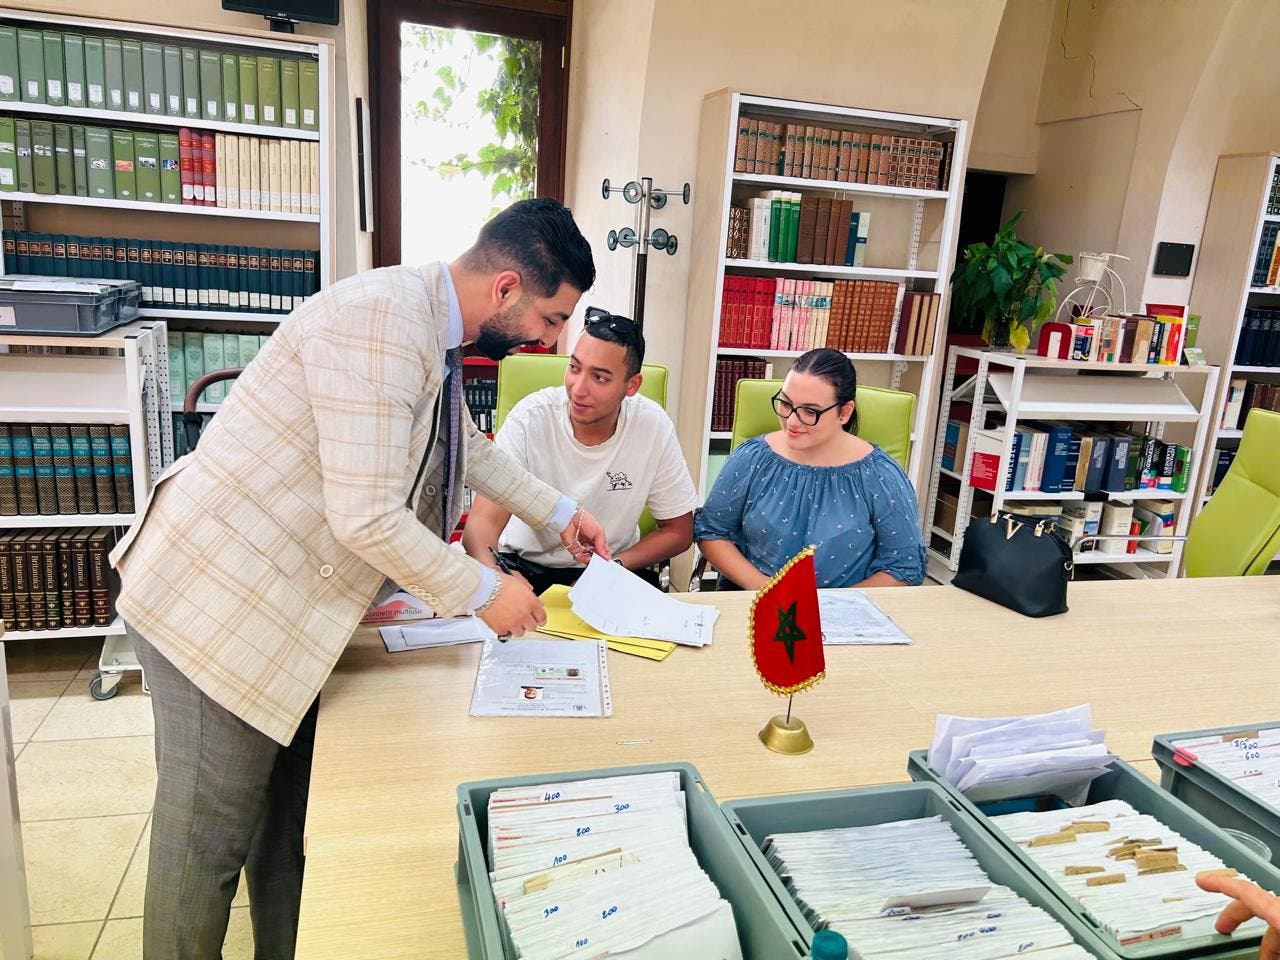 Un consolato mobile amministra gli affari marocchini nella città di Latiano, nel sud Italia